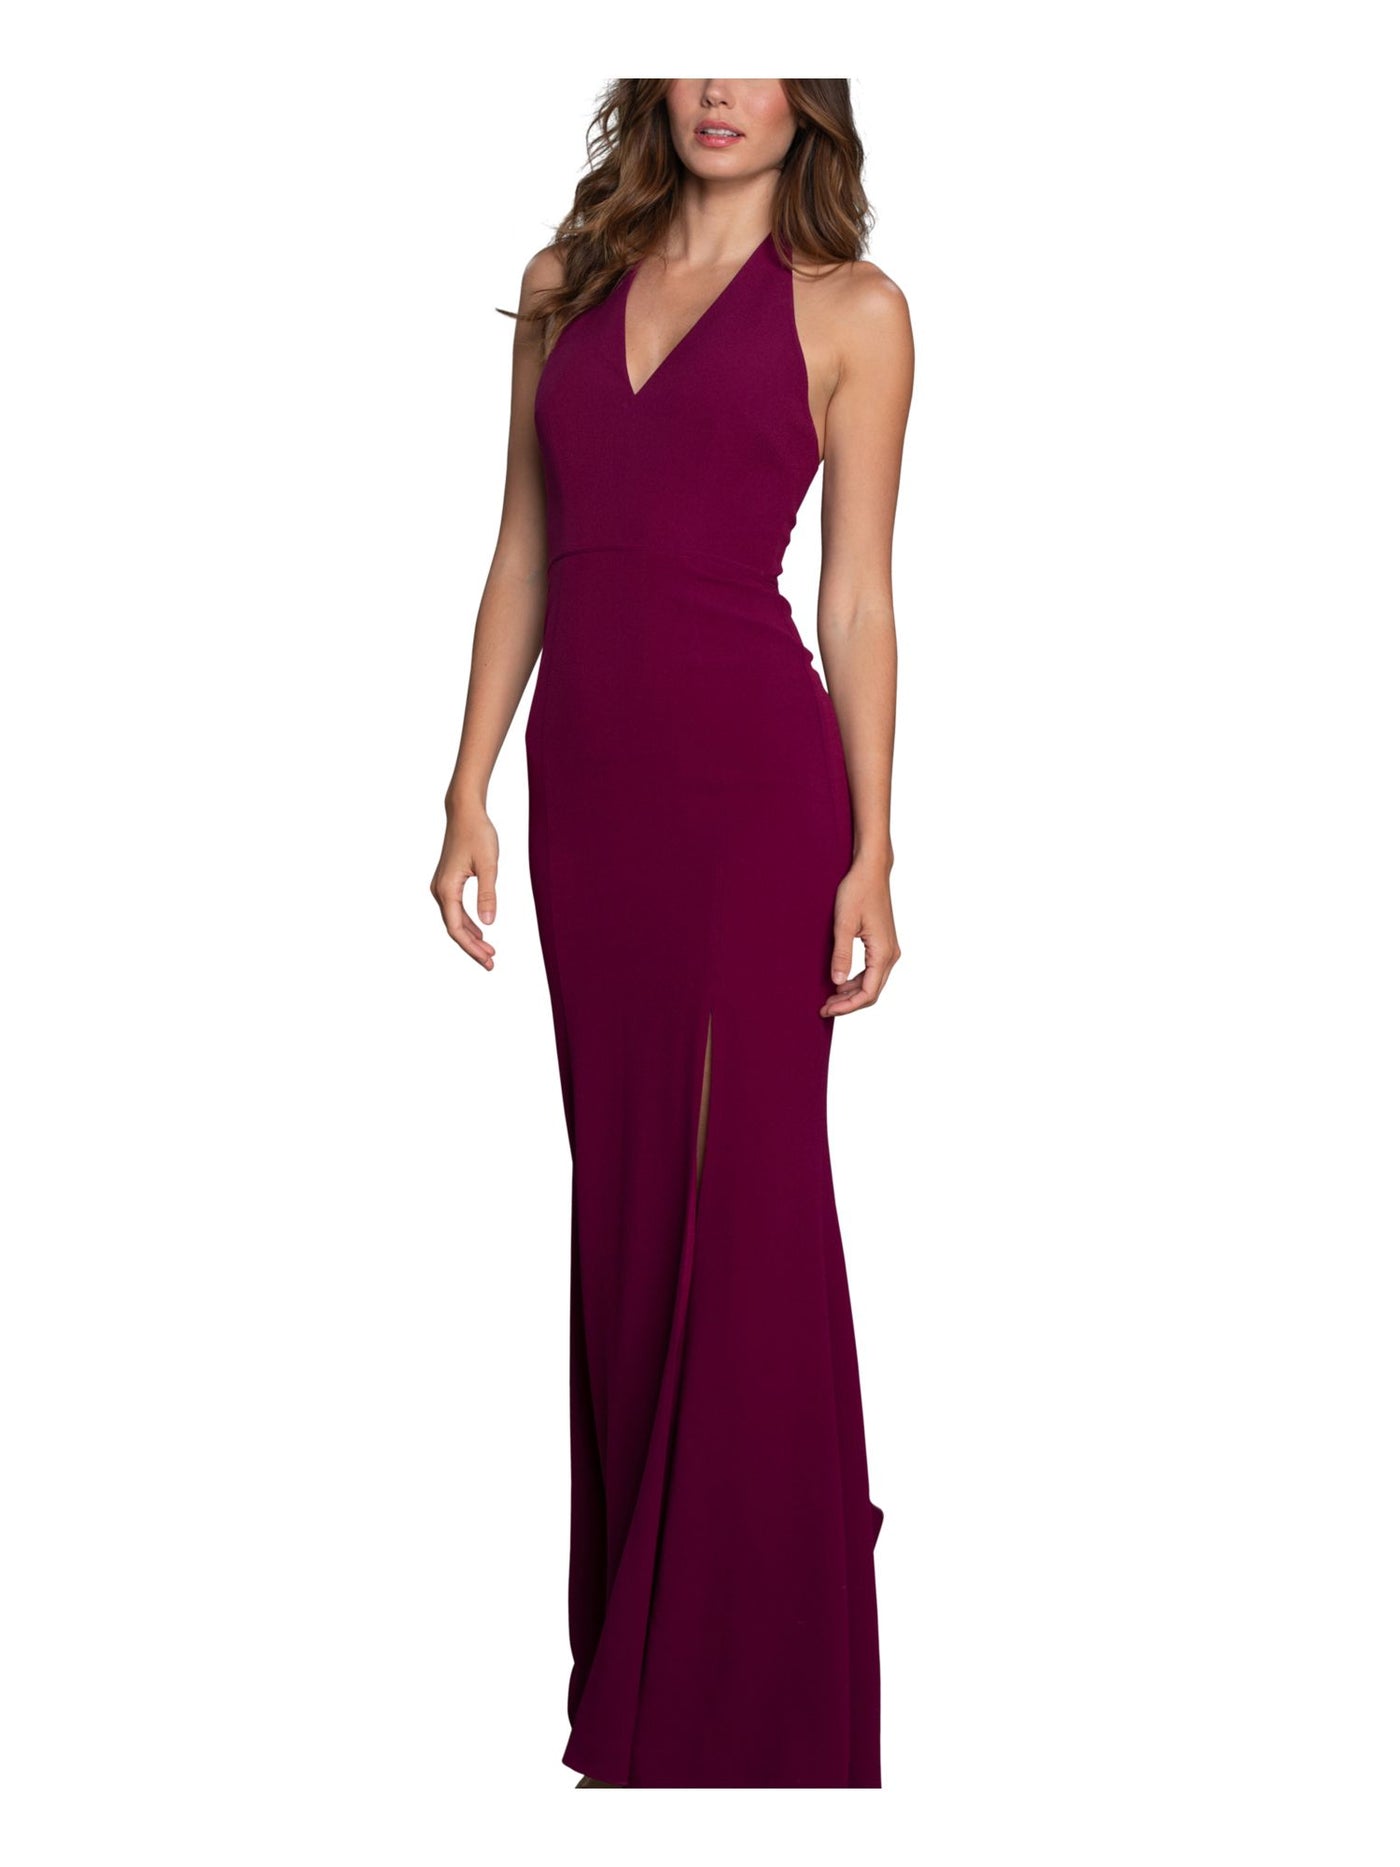 DRESS THE POPULATION Womens Maroon Zippered Te Halter Short Sleeve V Neck Full-Length Formal Gown Dress M